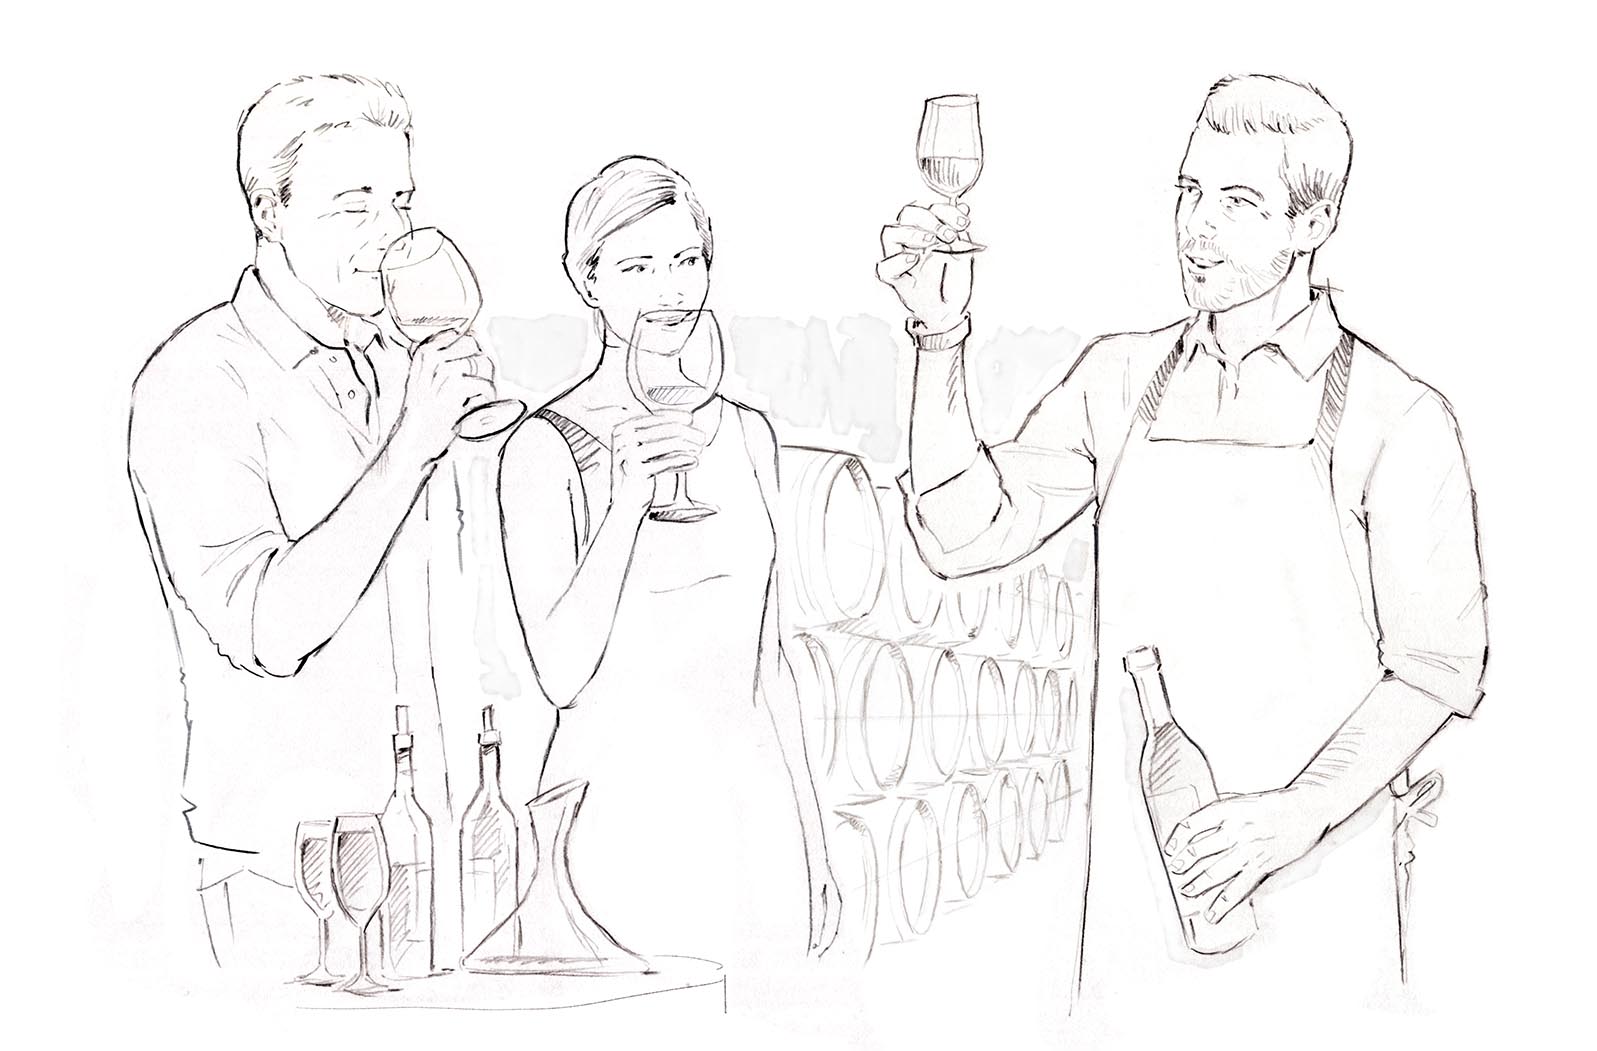 Der Hauptgewinn: eine Weinprobe inkl. Sommelier (Illustration)